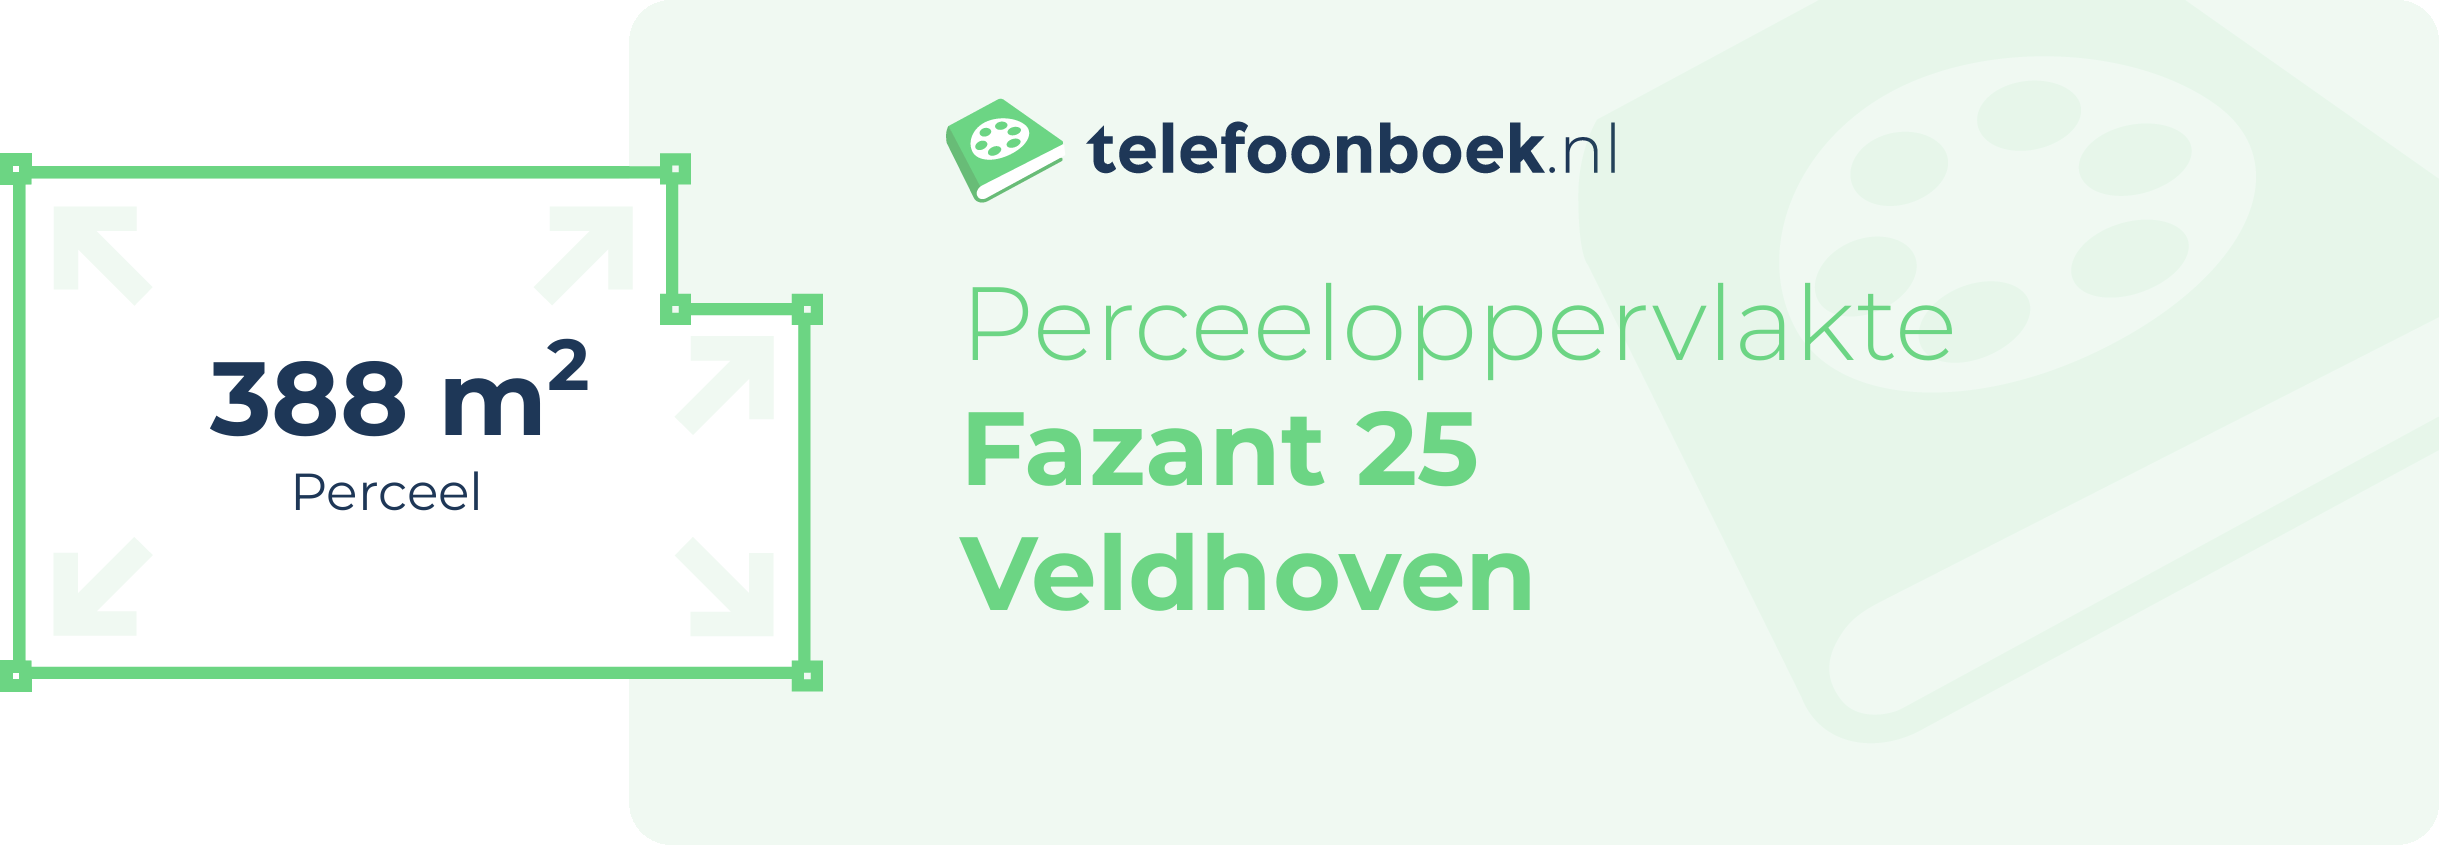 Perceeloppervlakte Fazant 25 Veldhoven